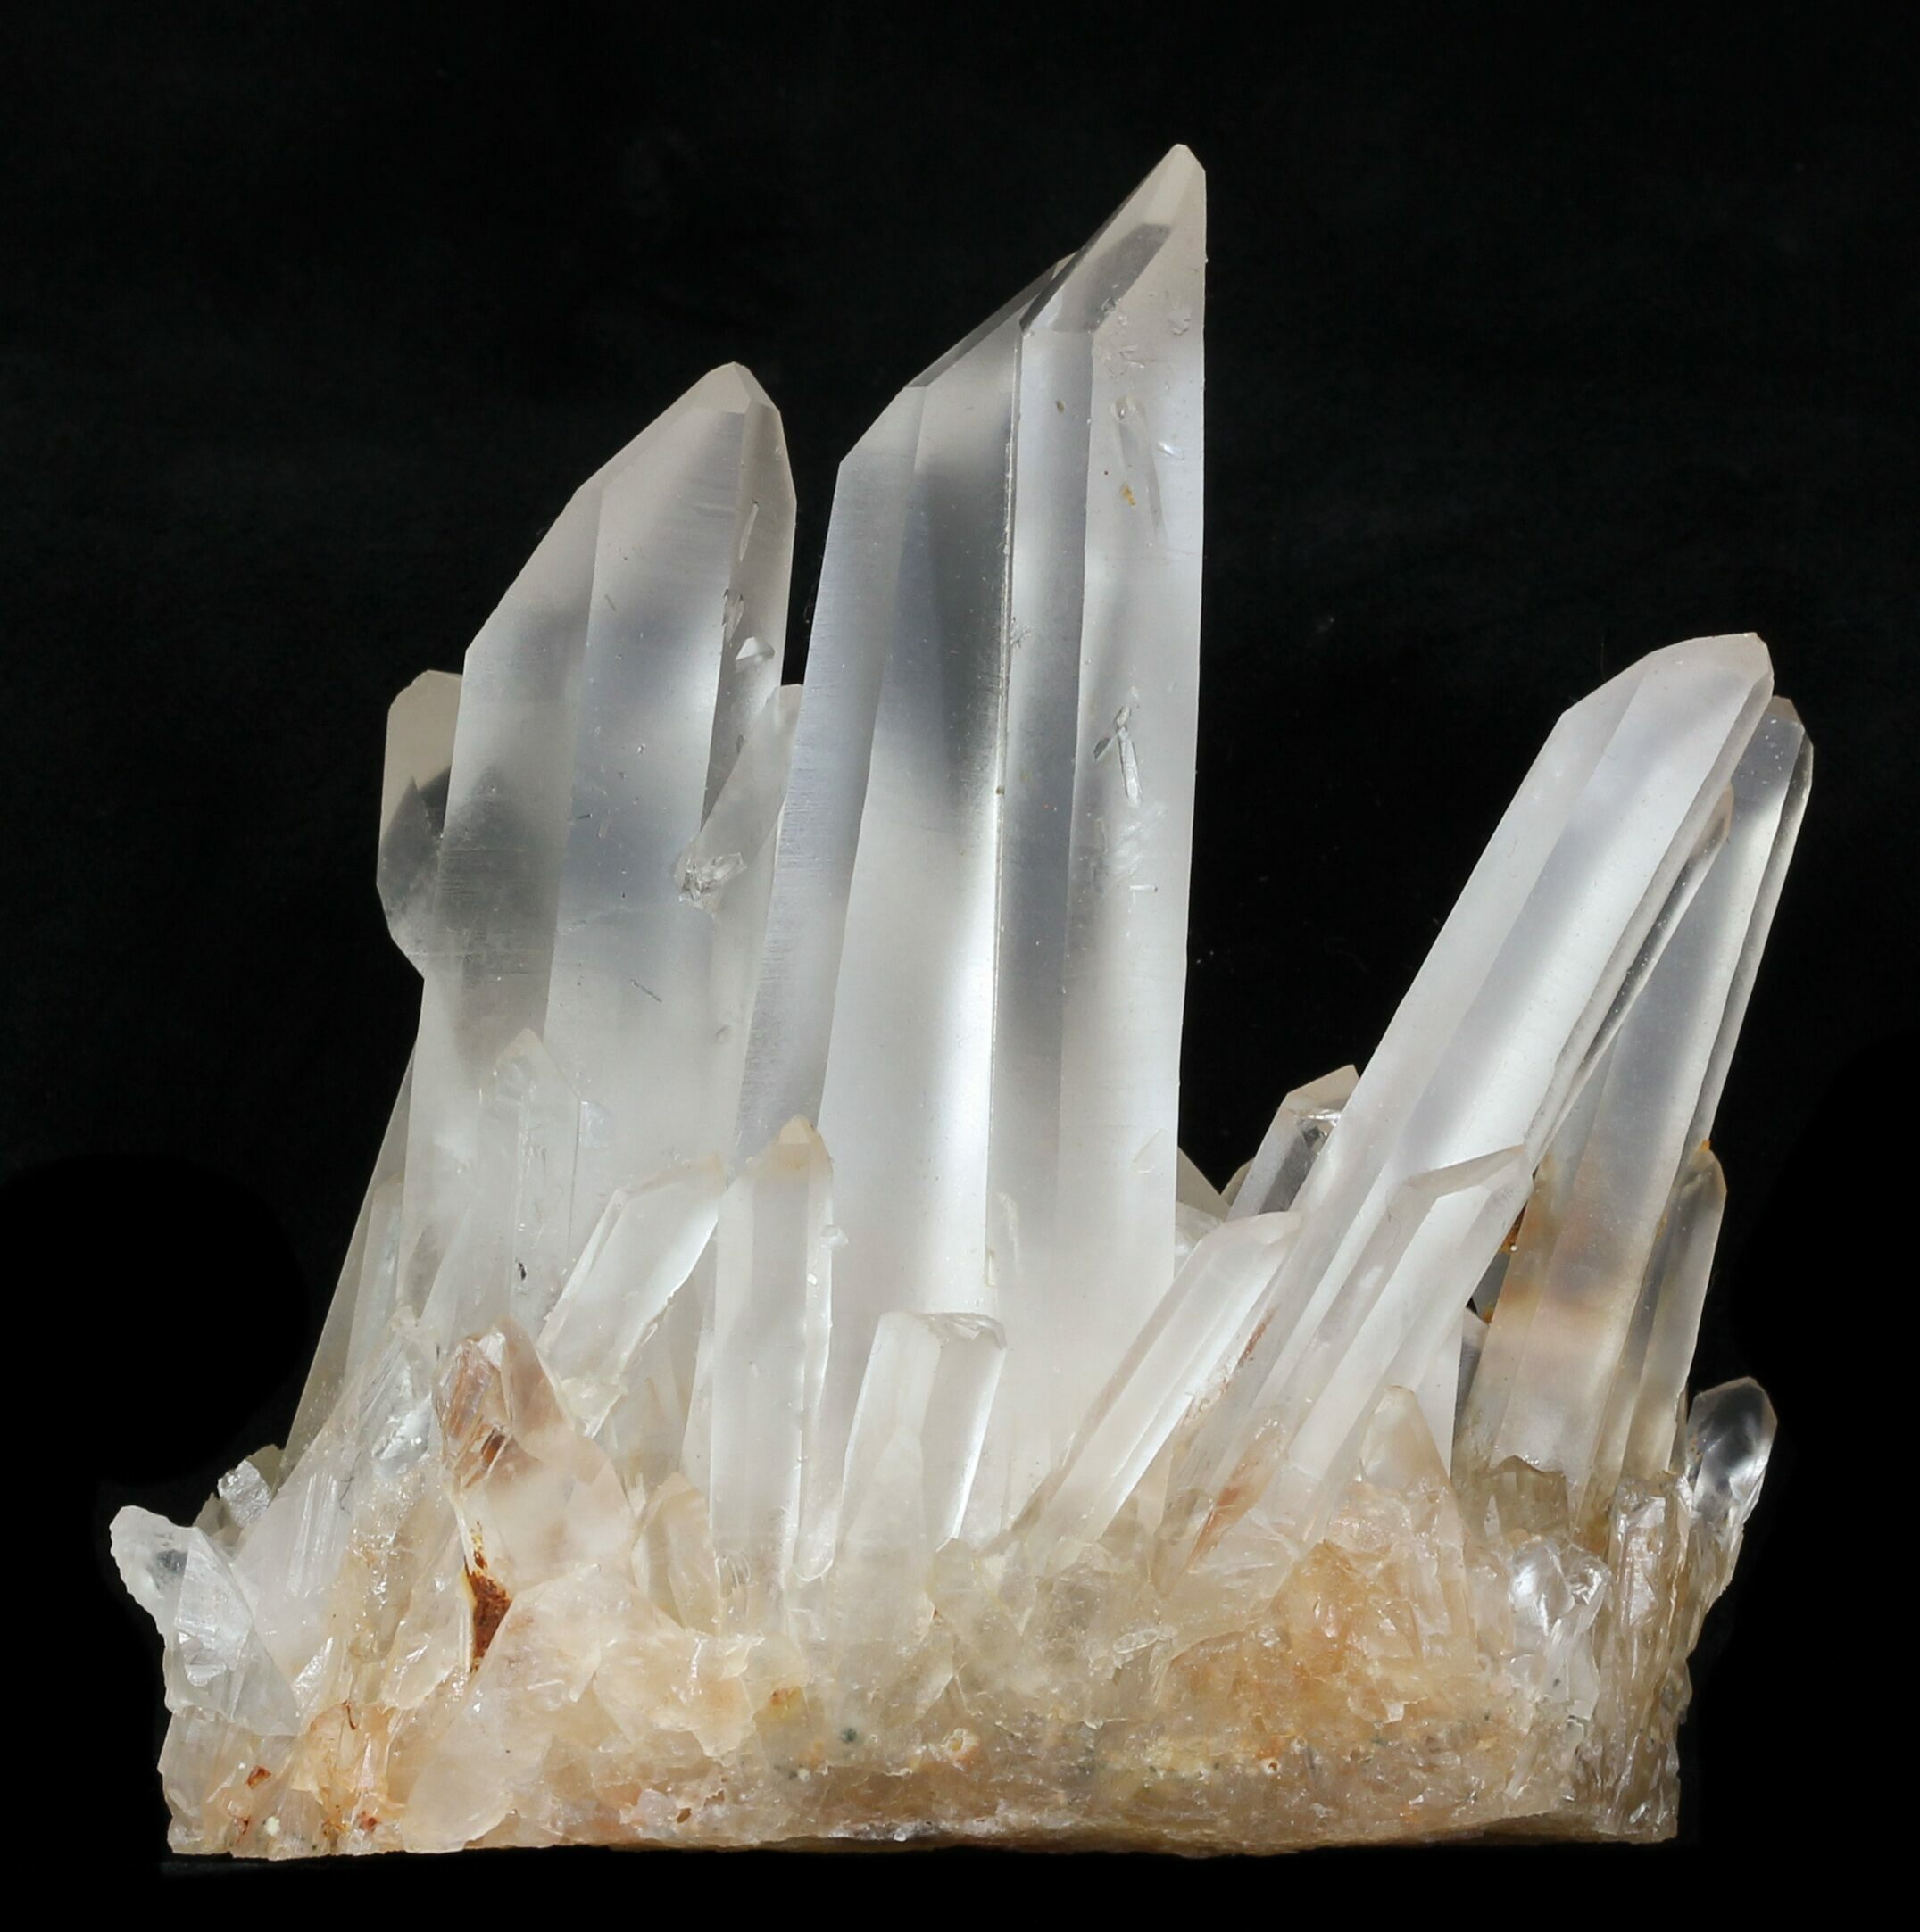 quartzcrystal cost